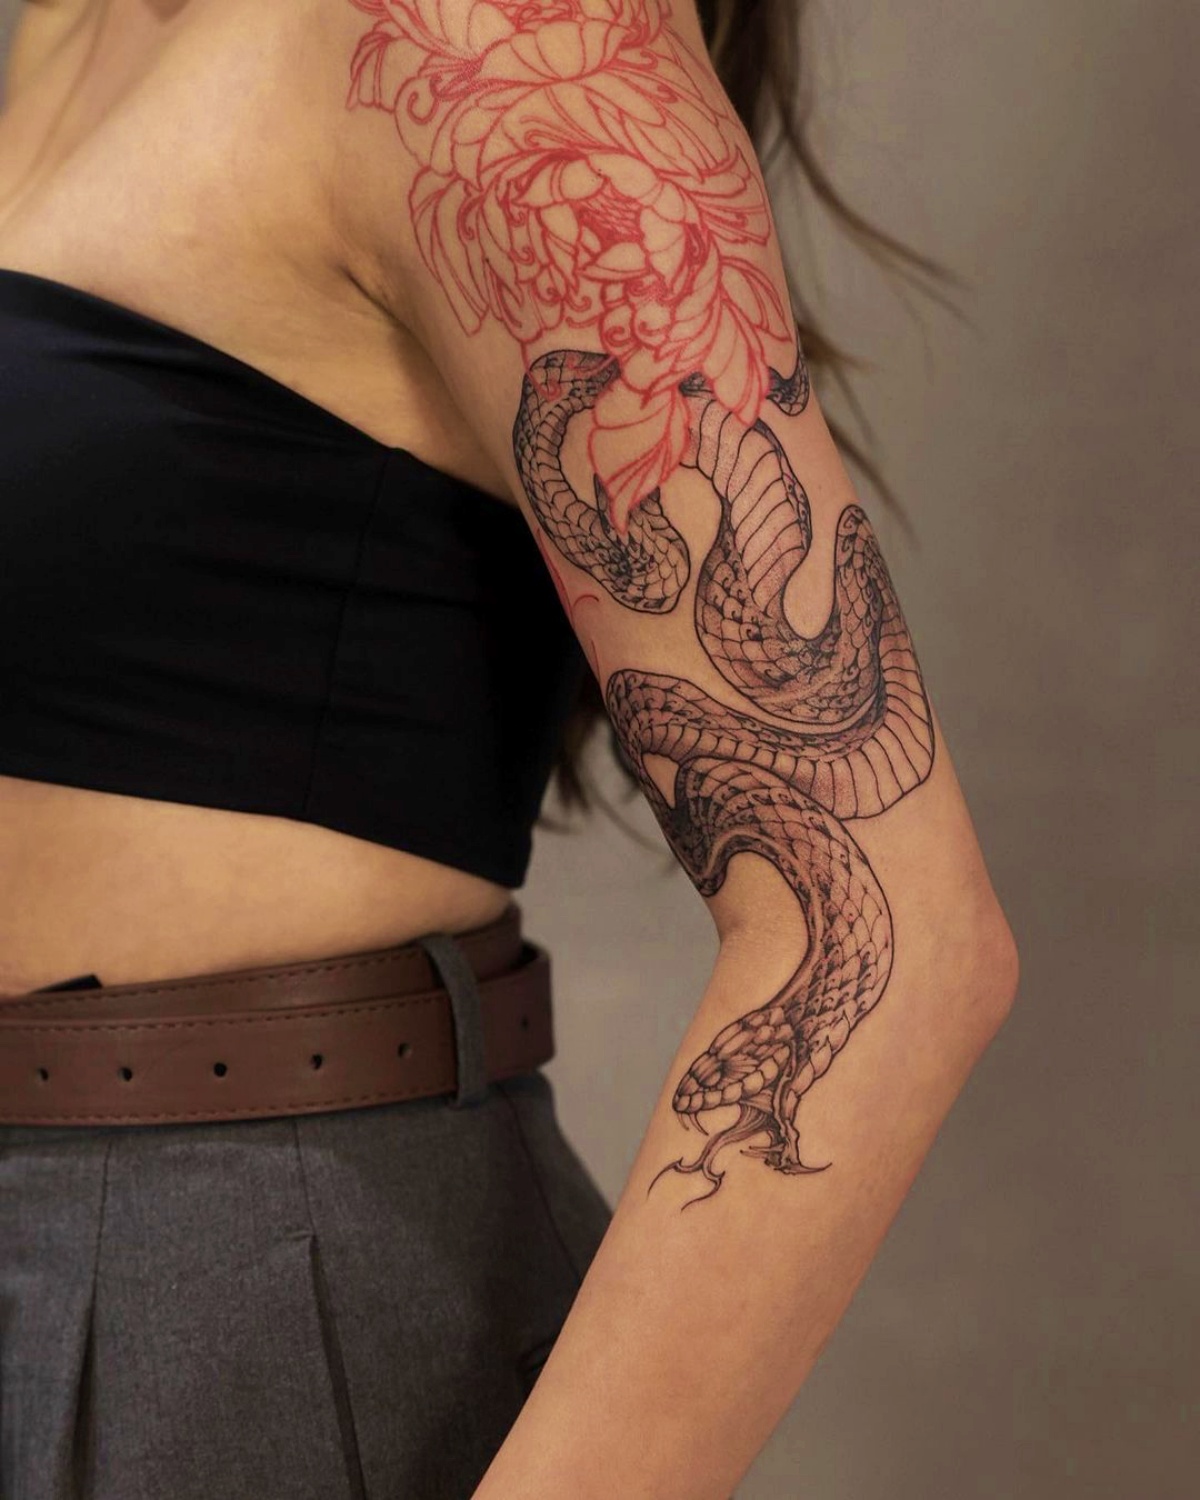 tattoo manica donna disegno serpente fiore di loto rosso